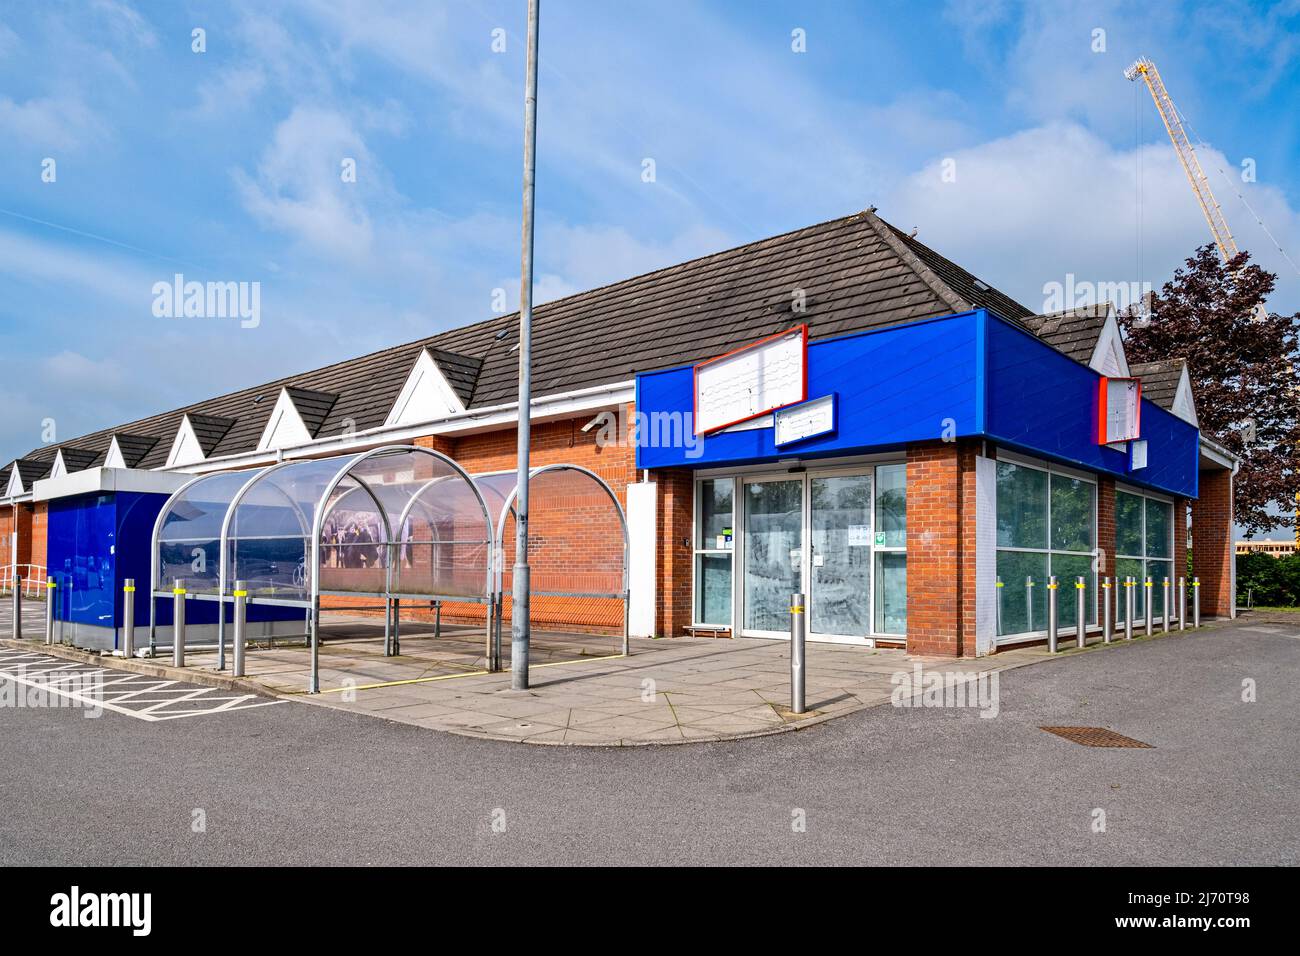 Le supermarché Jack's fermé, qui fait partie de Tesco à Middlewich Cheshire Royaume-Uni Banque D'Images